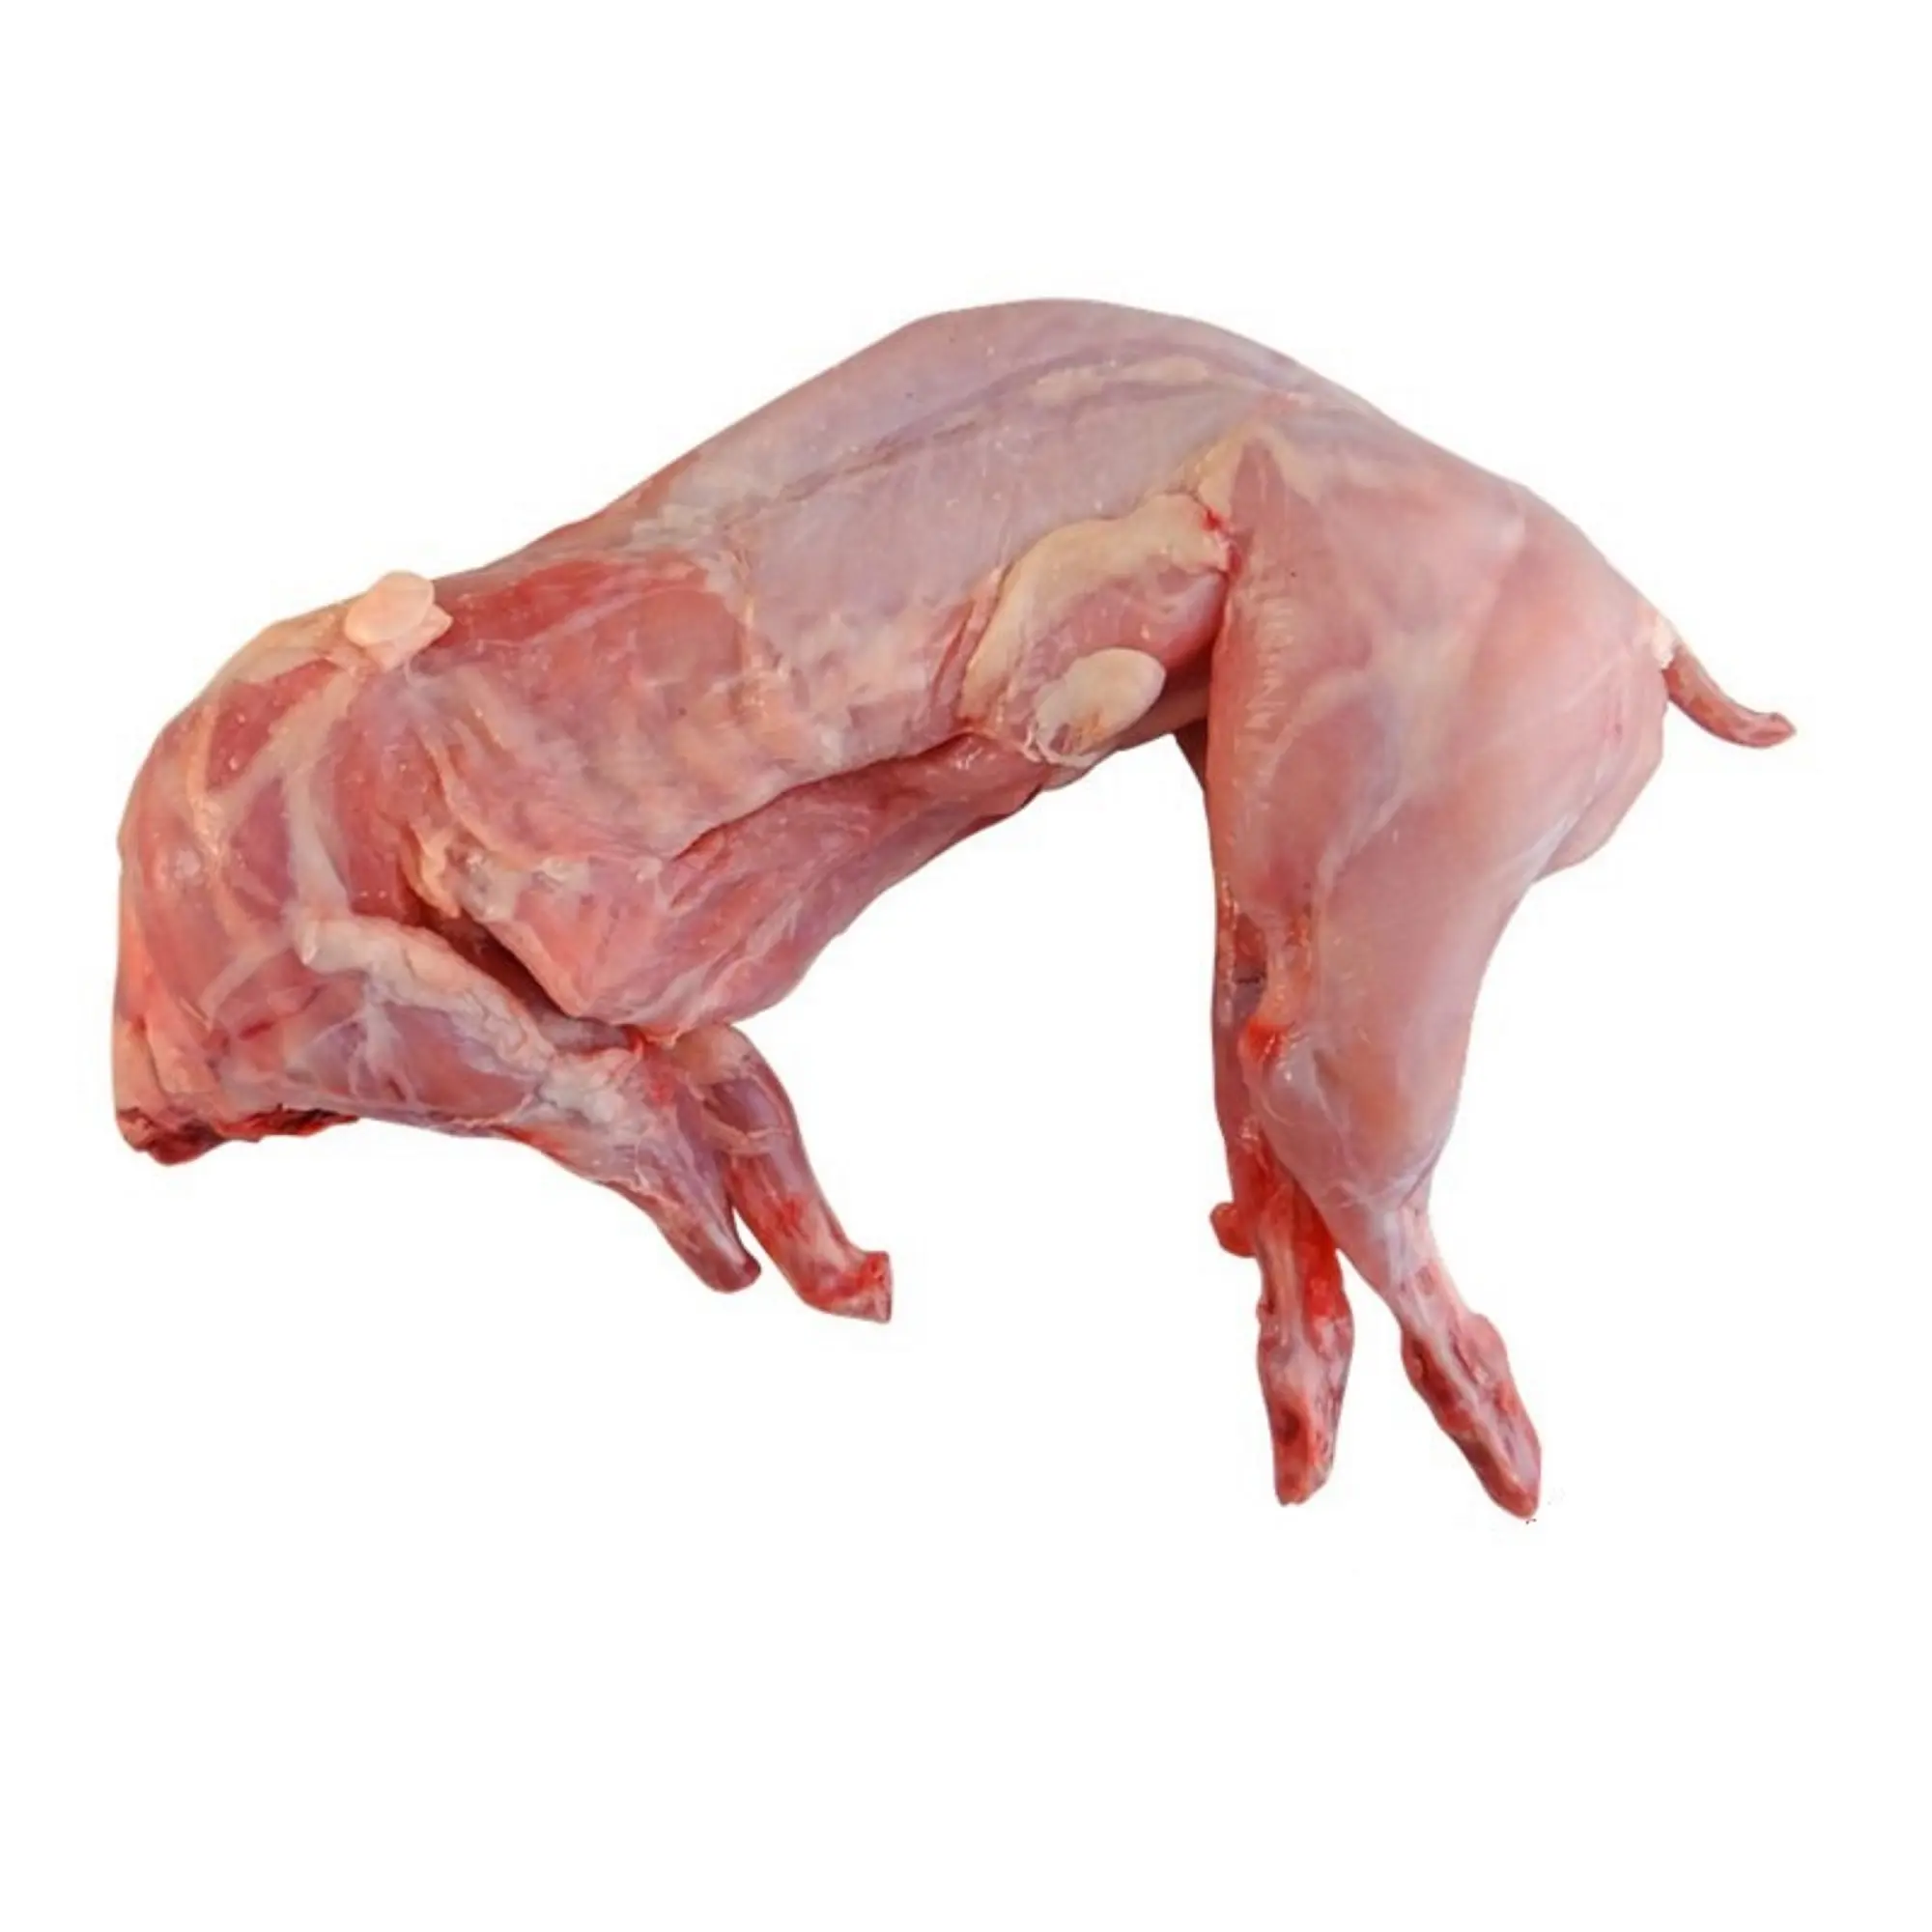 ताजा जमे हुए खरगोश का मांस हलाल ग्रेड खरगोश का मांस सस्ता